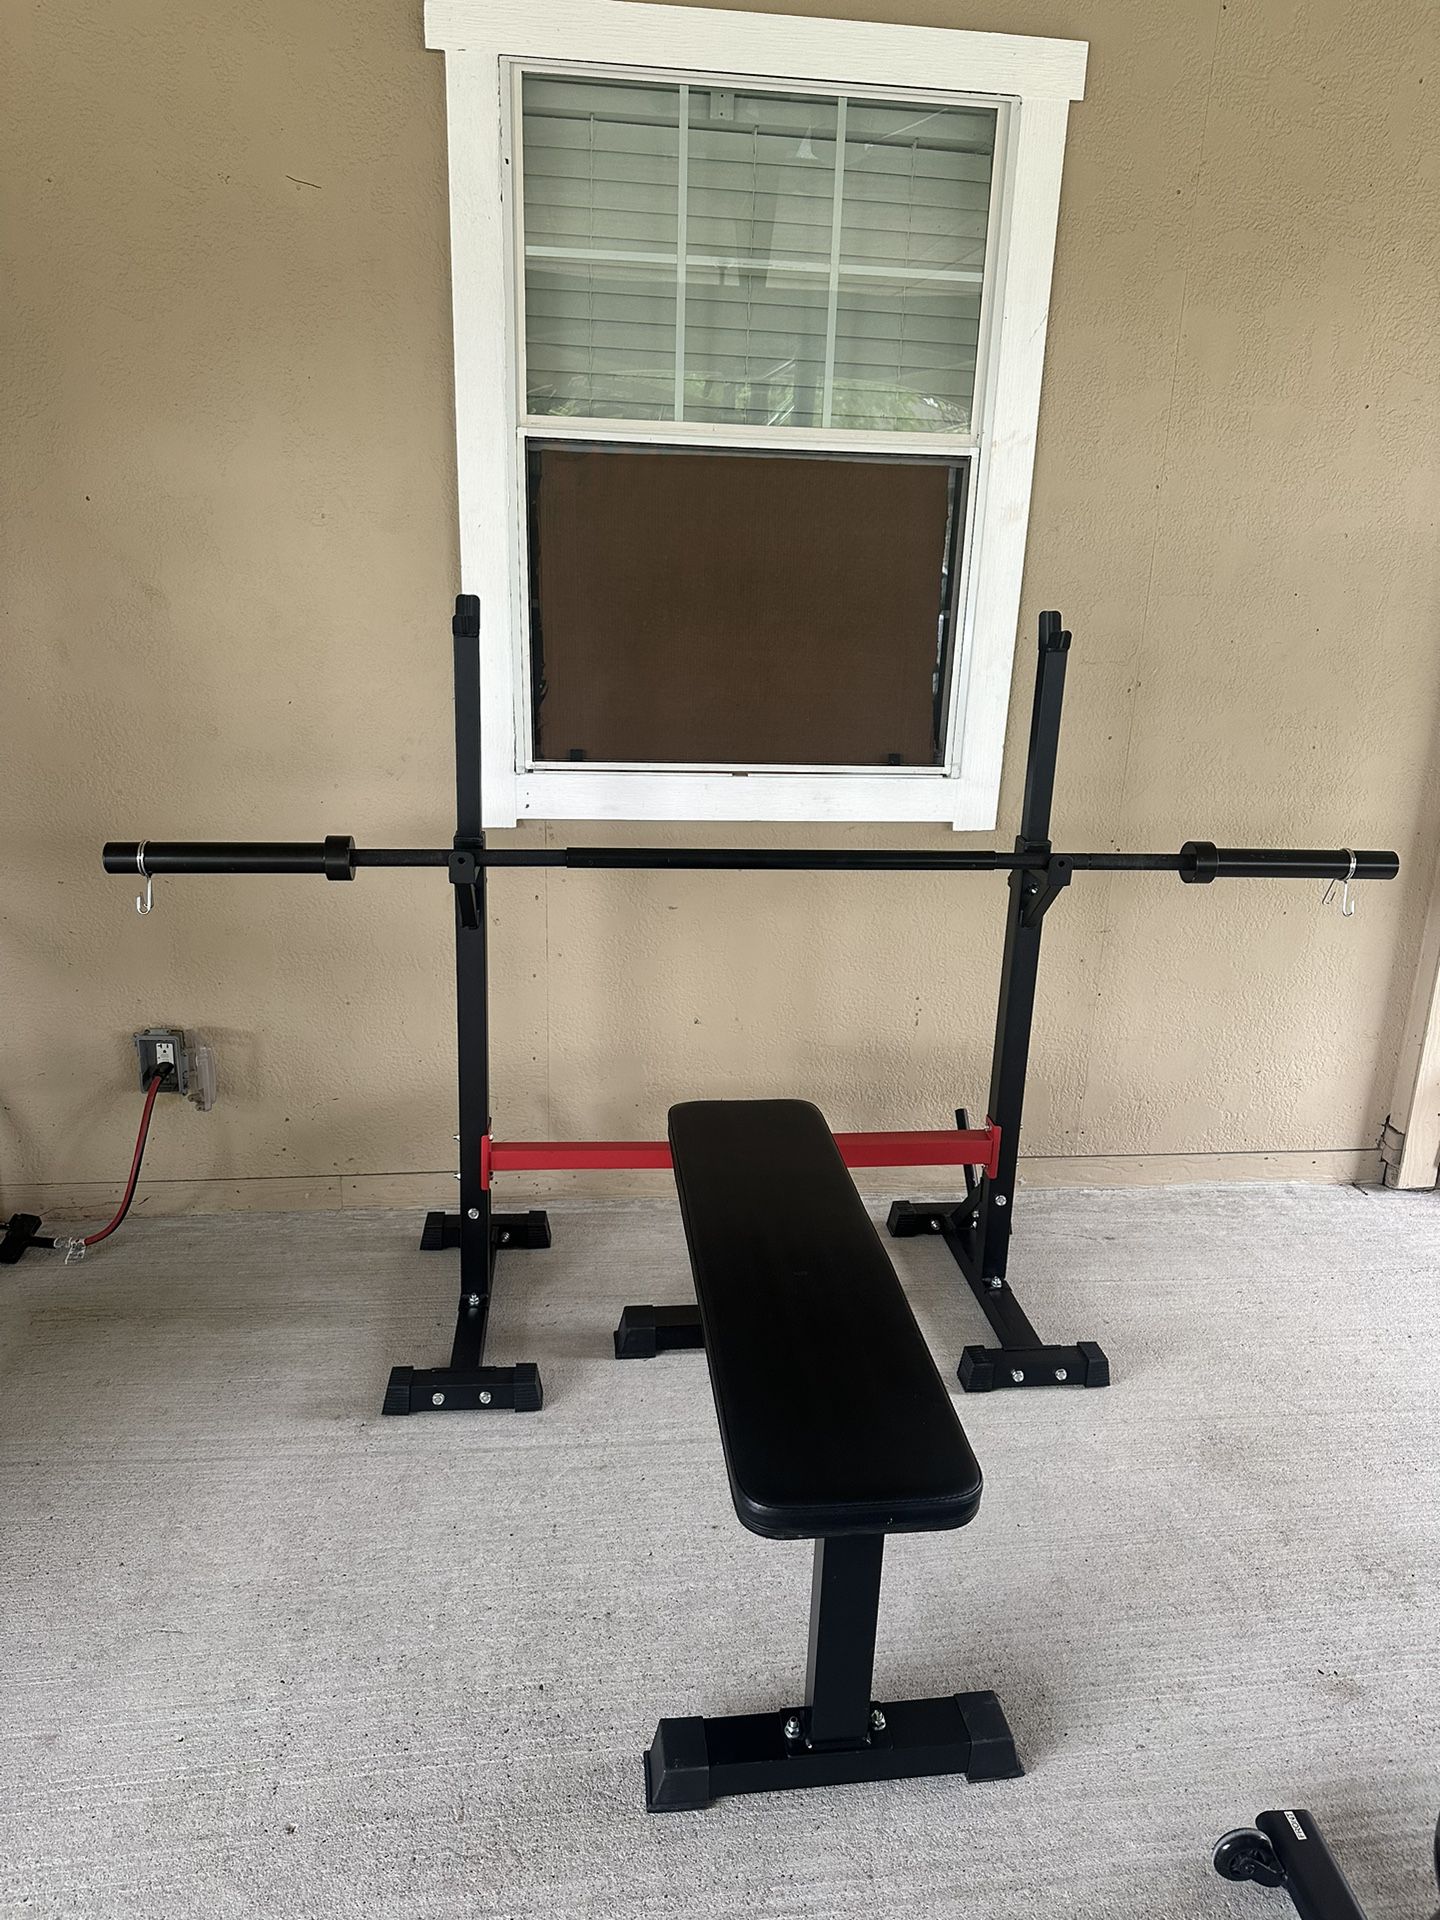 Cap 3pcs Barbell, adjustable squat rack & flat bench $170 